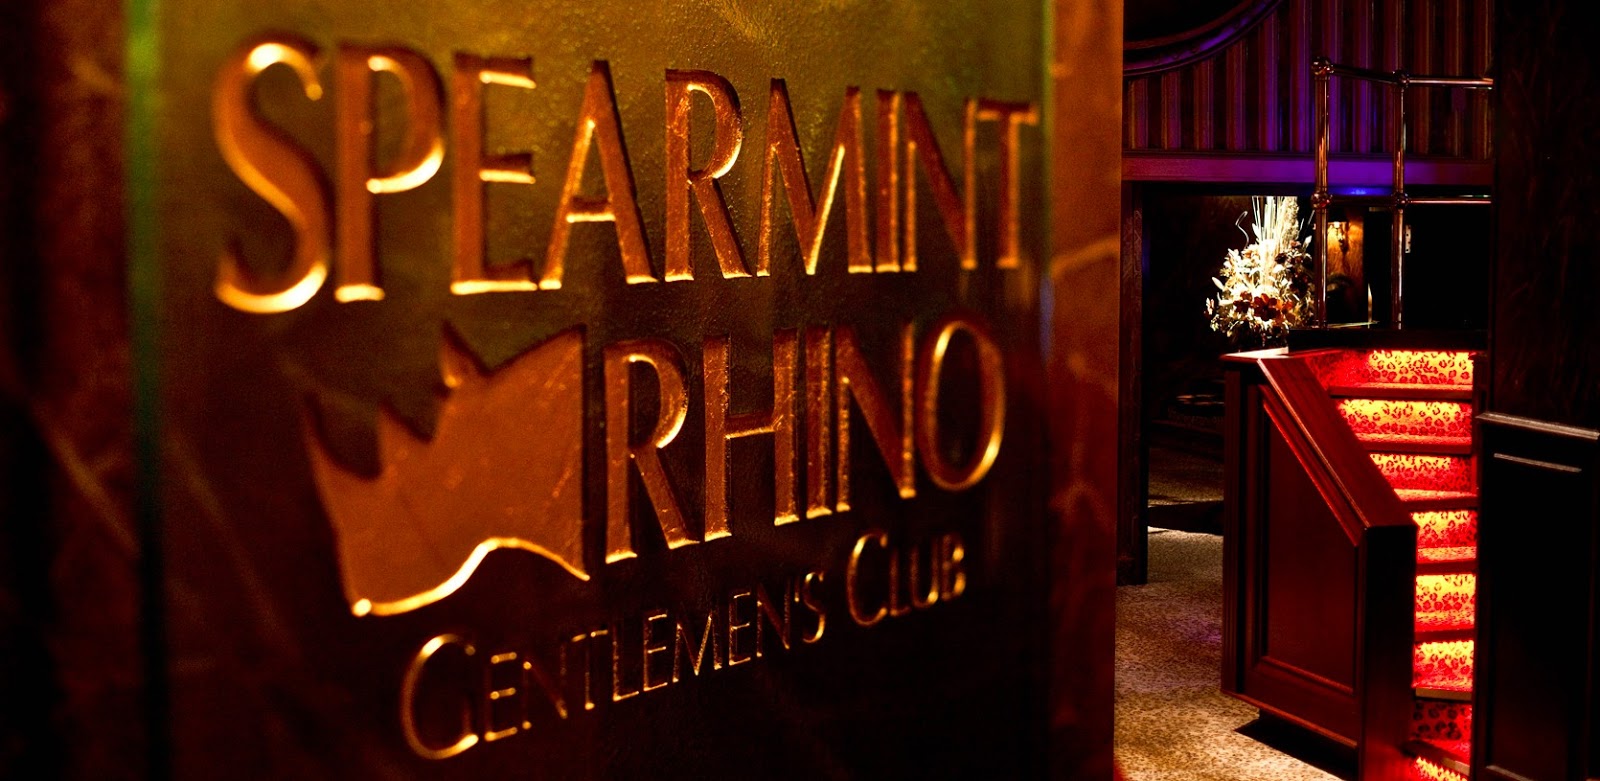 Member Spearmint Rhino Gentlemen's Club Van Nuys in Van Nuys CA